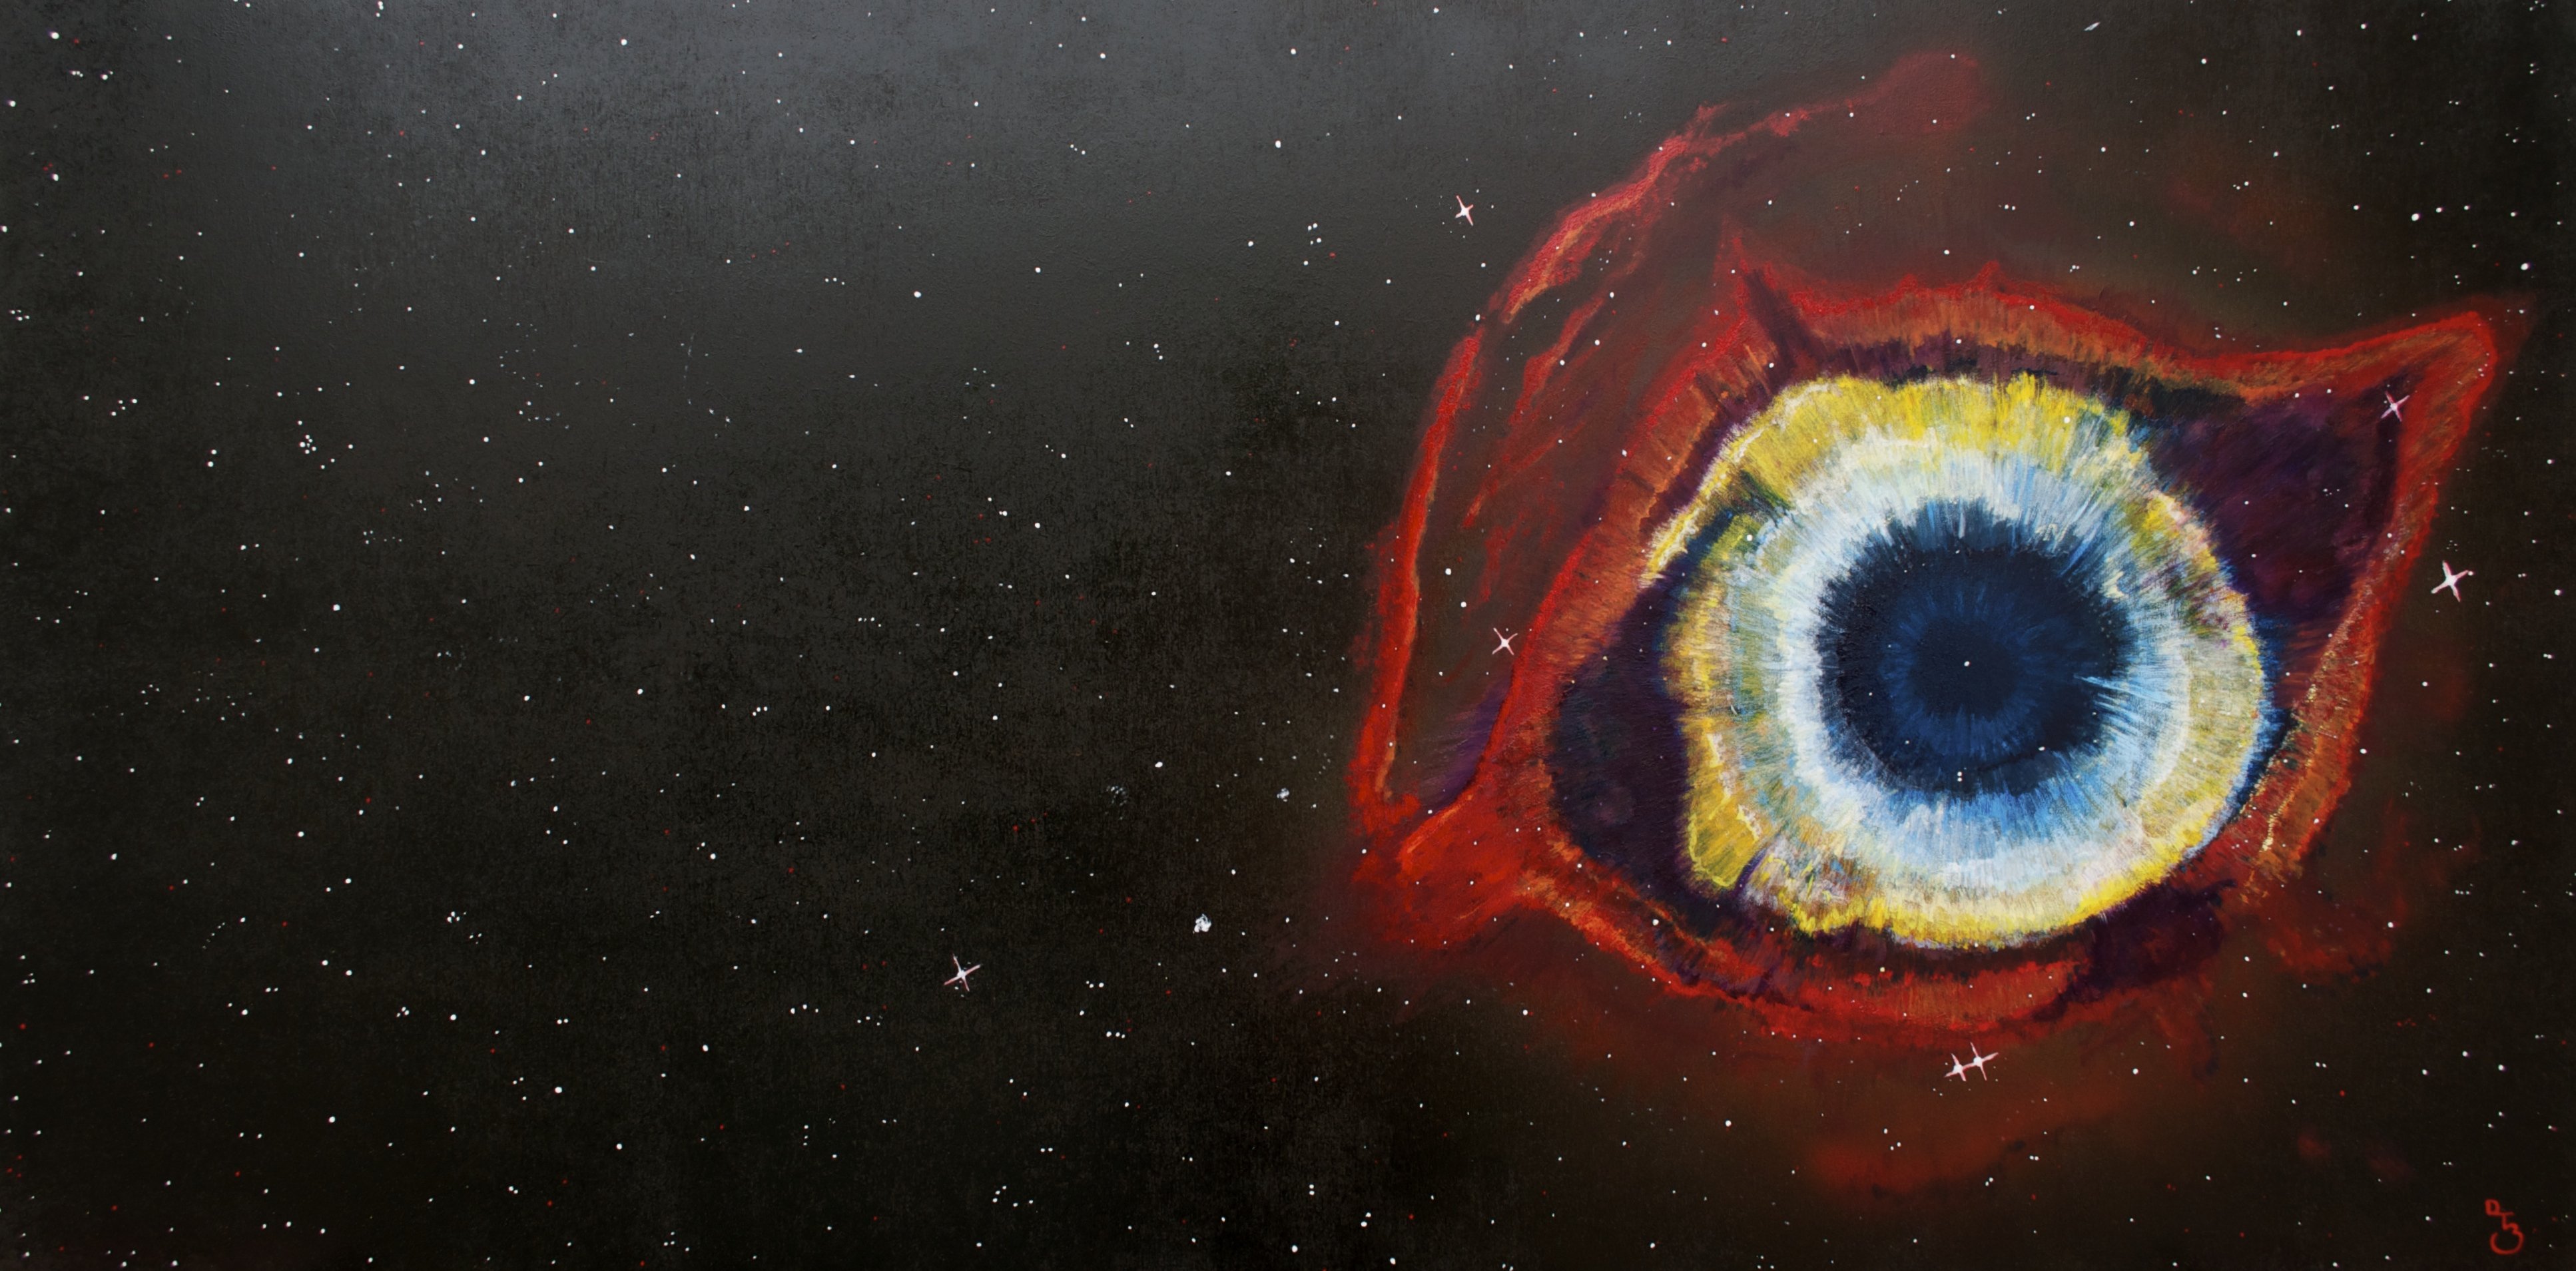 Глаз бога тг glazbog com. Глаз Бога Геншин. Туманность NGC 7293. Планетарная туманность улитка. Глаз с боку.